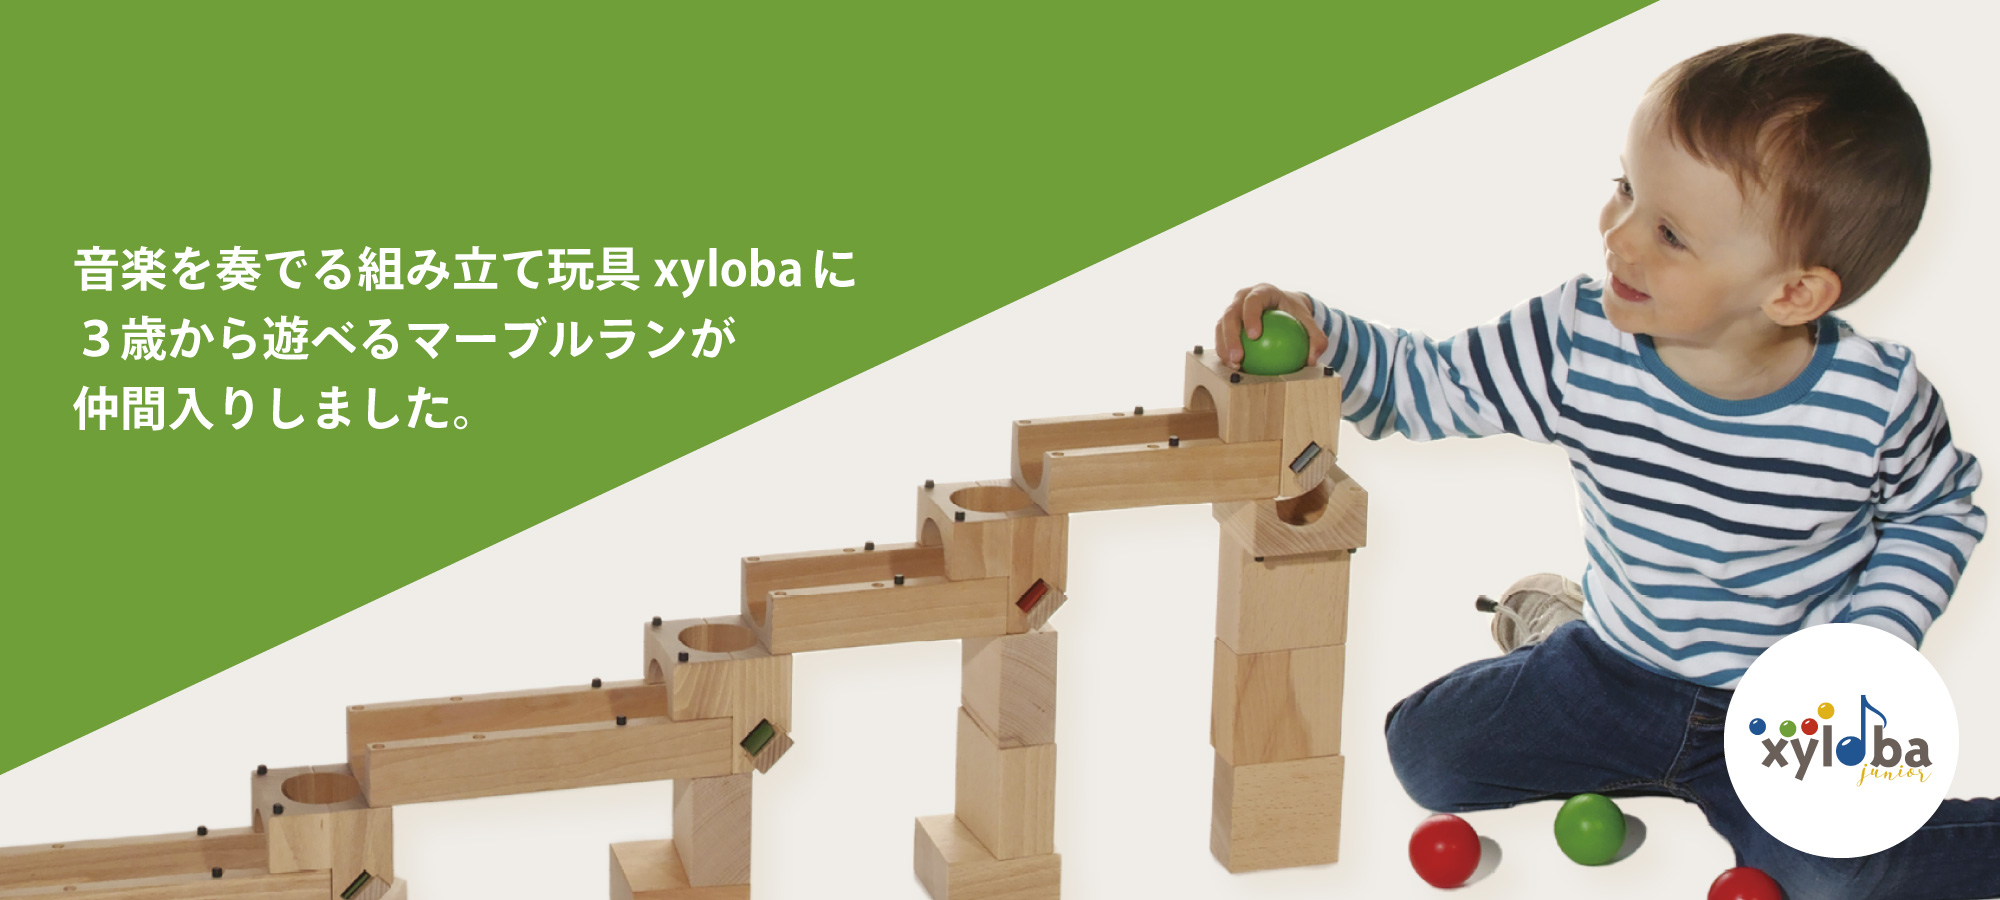 新規出店xyloba junior midi サイロバジュニア ミディ 知育玩具